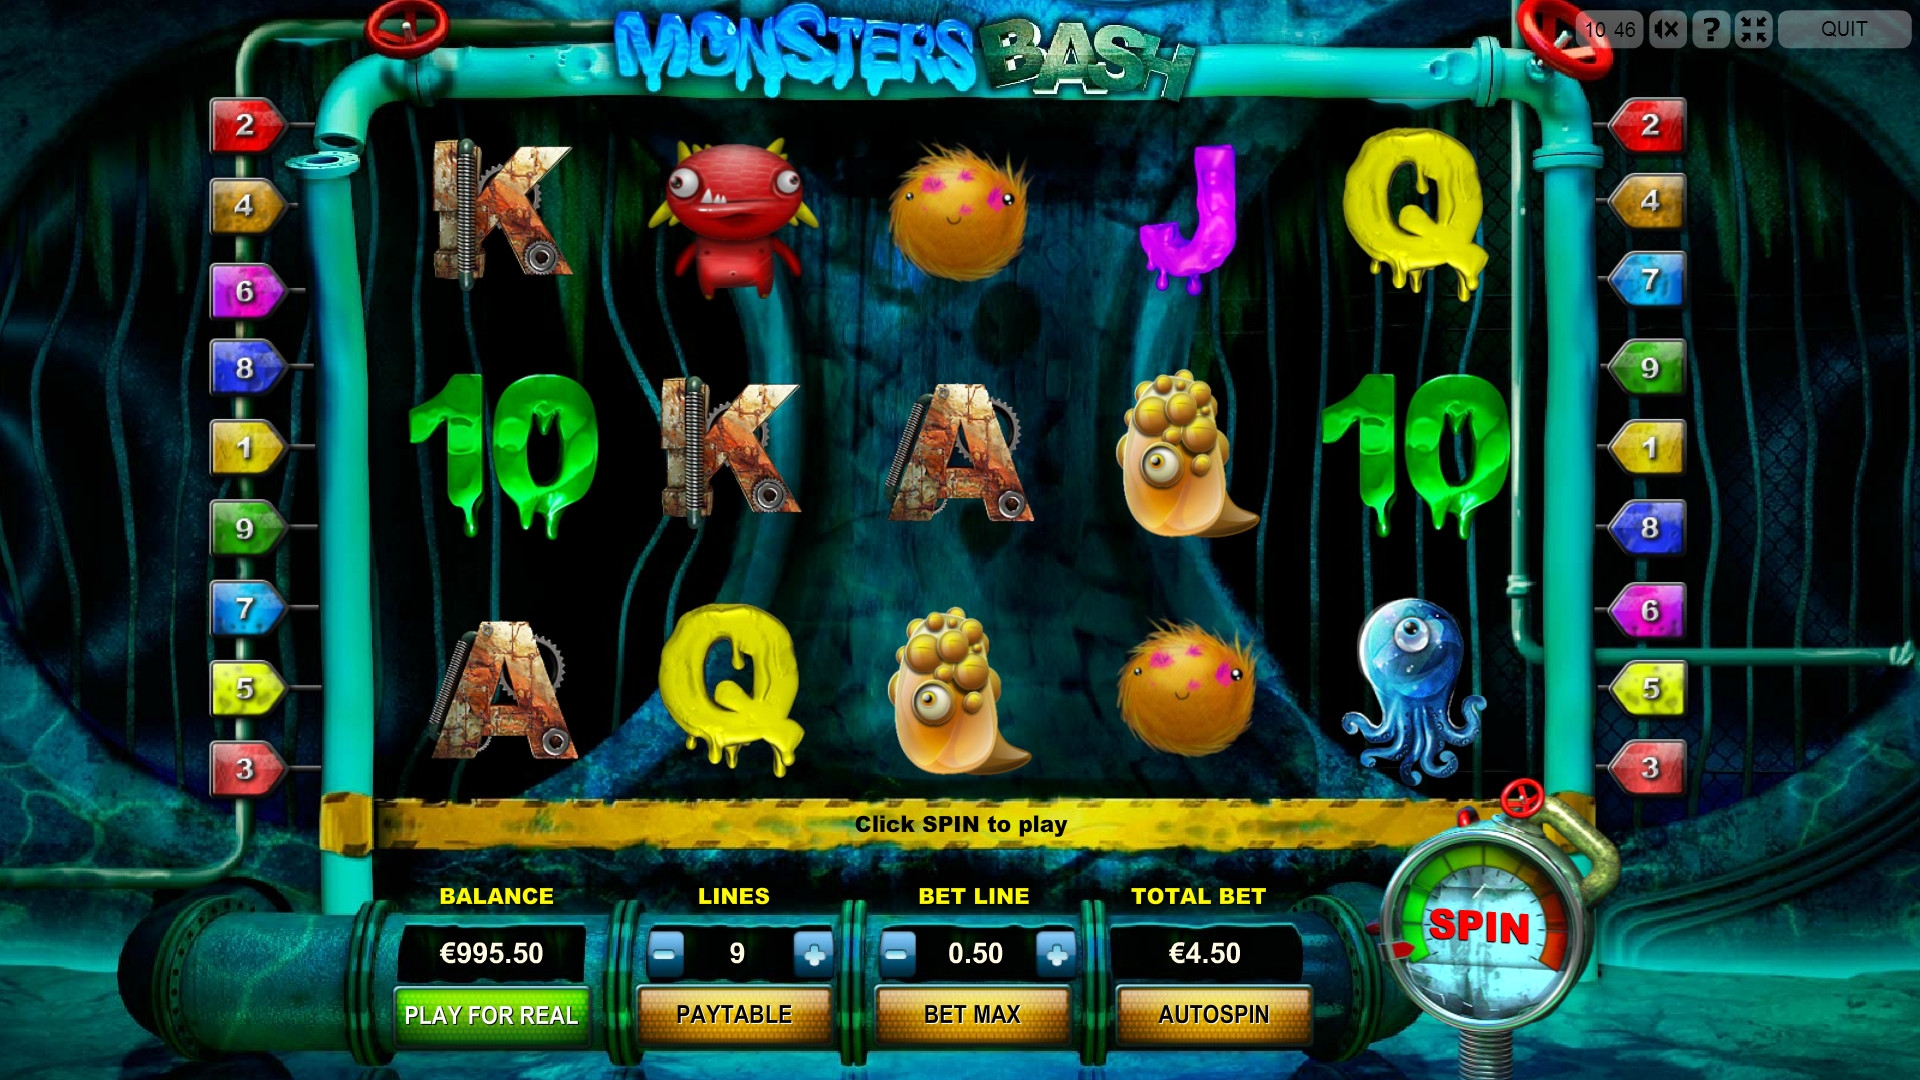 Monsters Bash (Гулянка монстров) из раздела Игровые автоматы